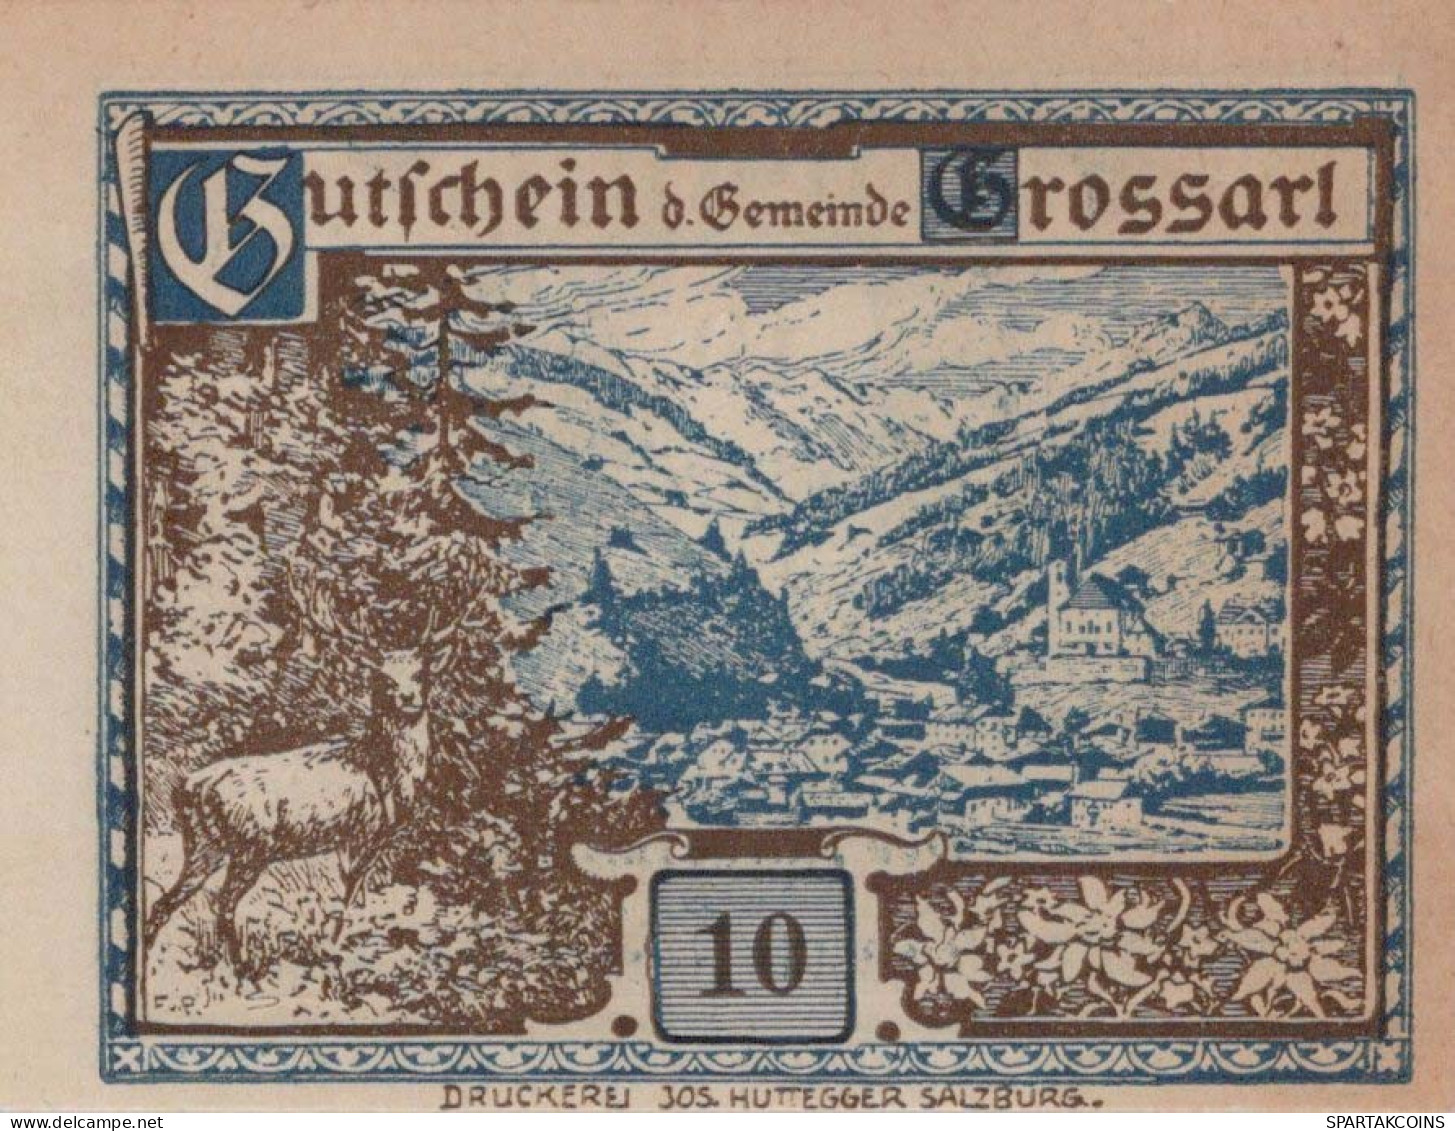 10 HELLER 1920 Stadt GROSSARL Salzburg Österreich Notgeld Banknote #PE998 - [11] Lokale Uitgaven